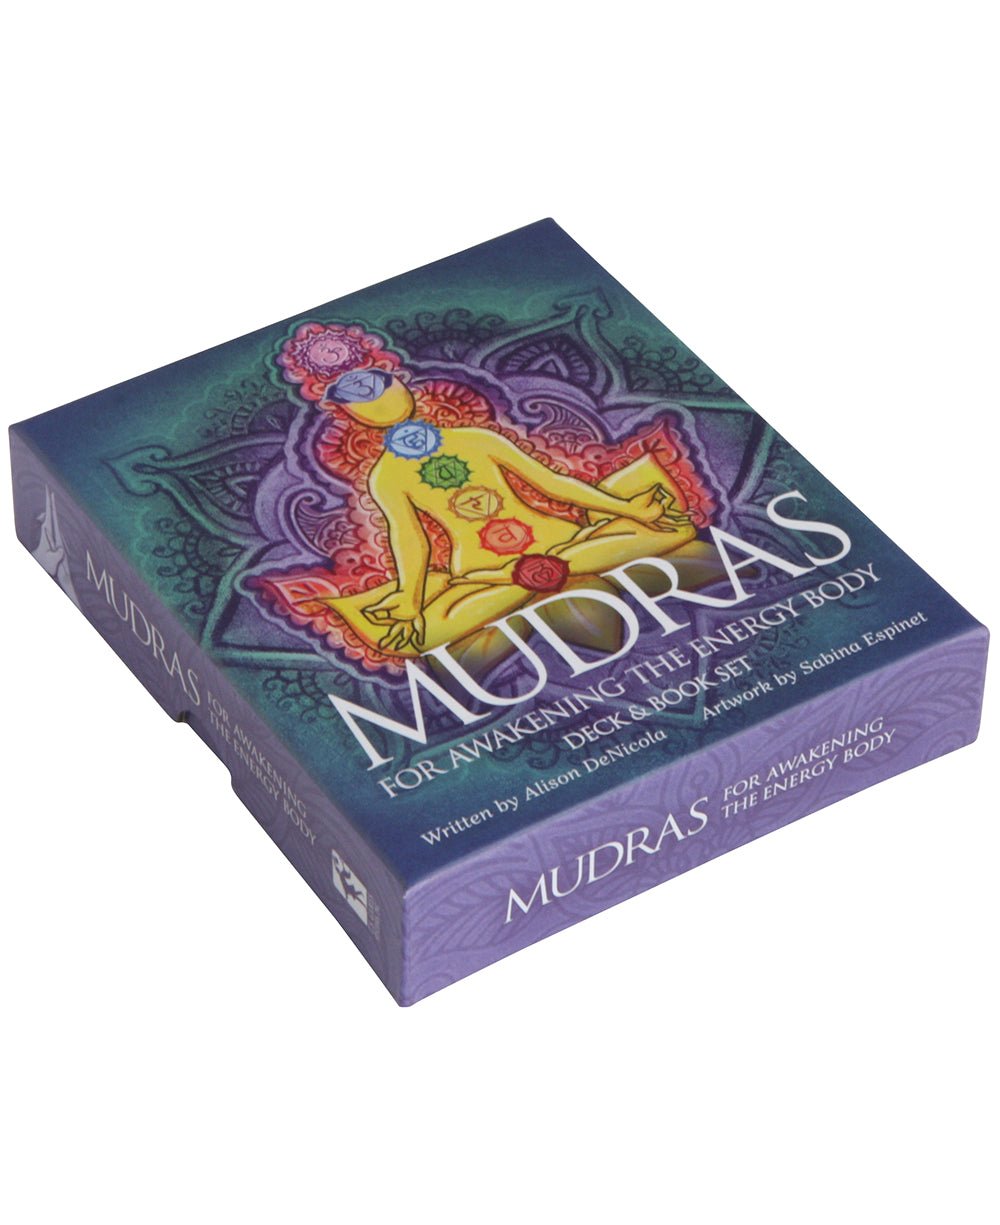 Mudras for Awakening the Energy Body, Card Deck -